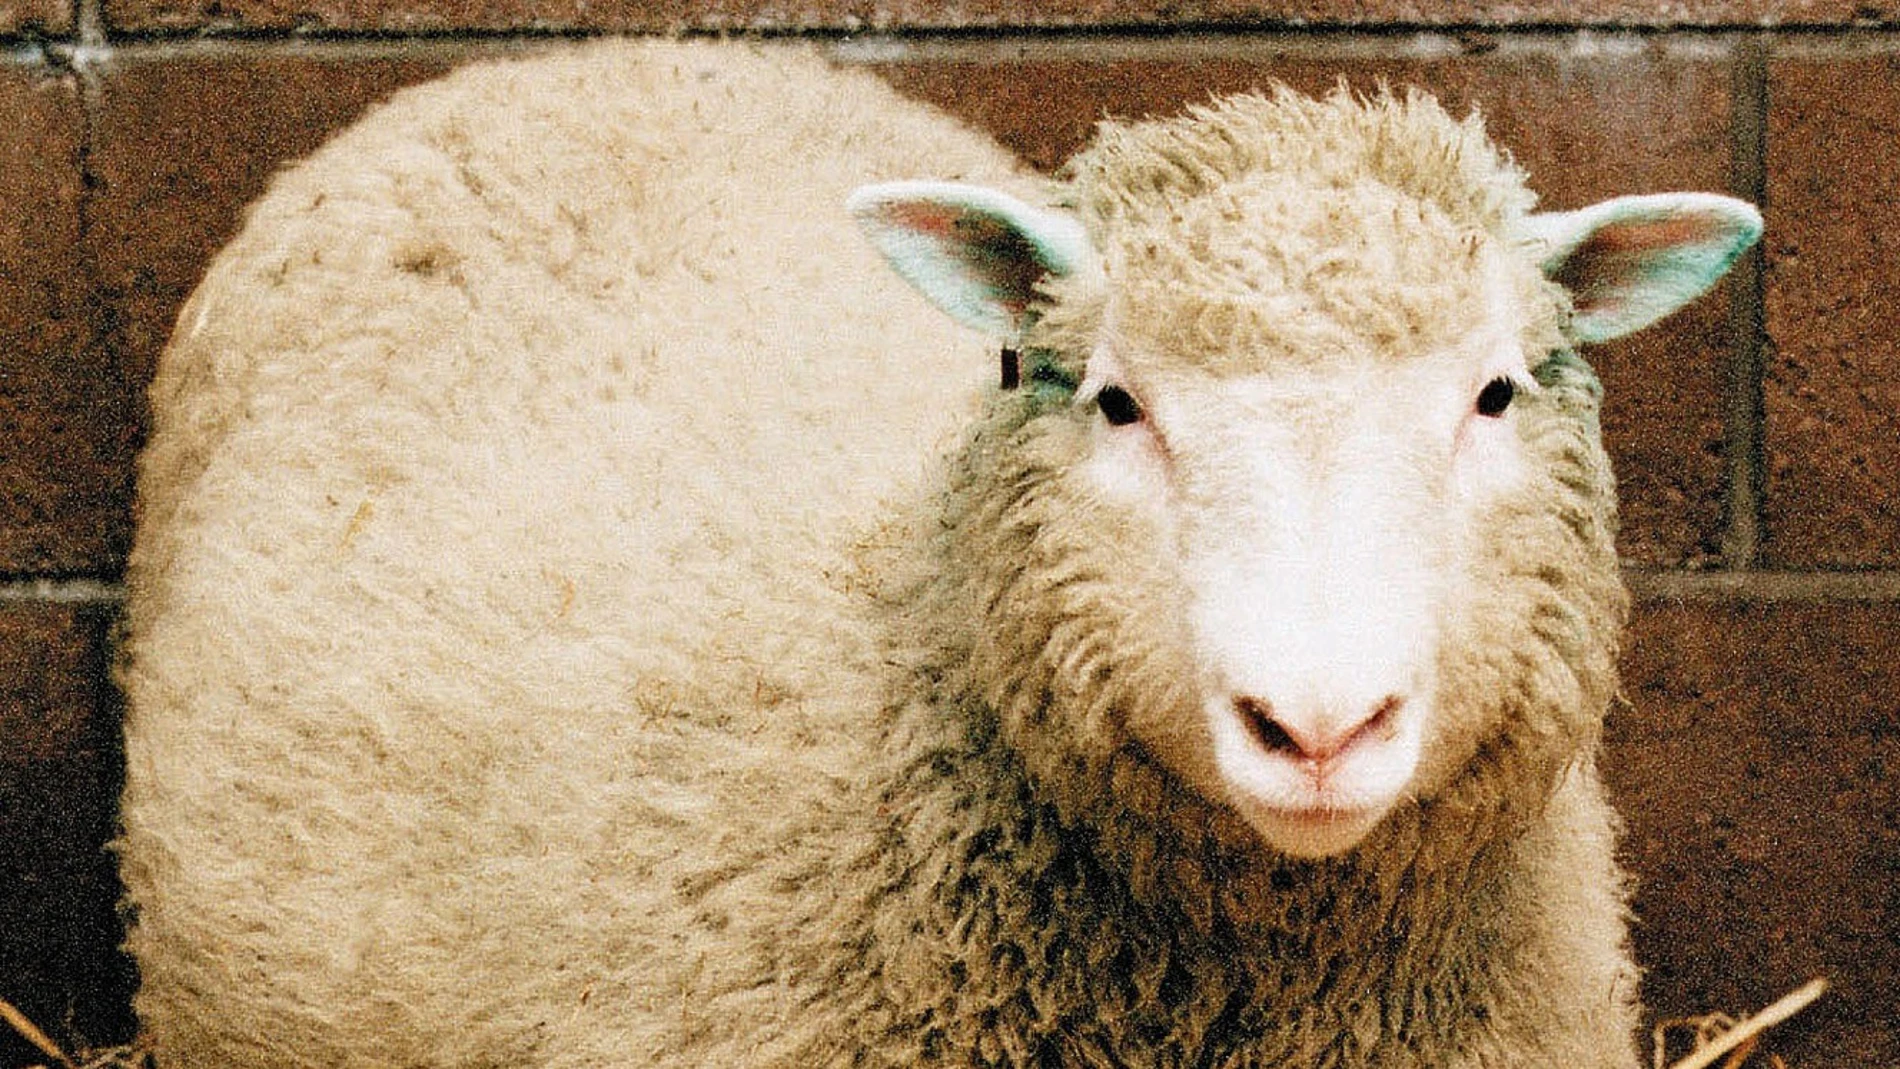 La oveja Dolly, clonada hace 25 años